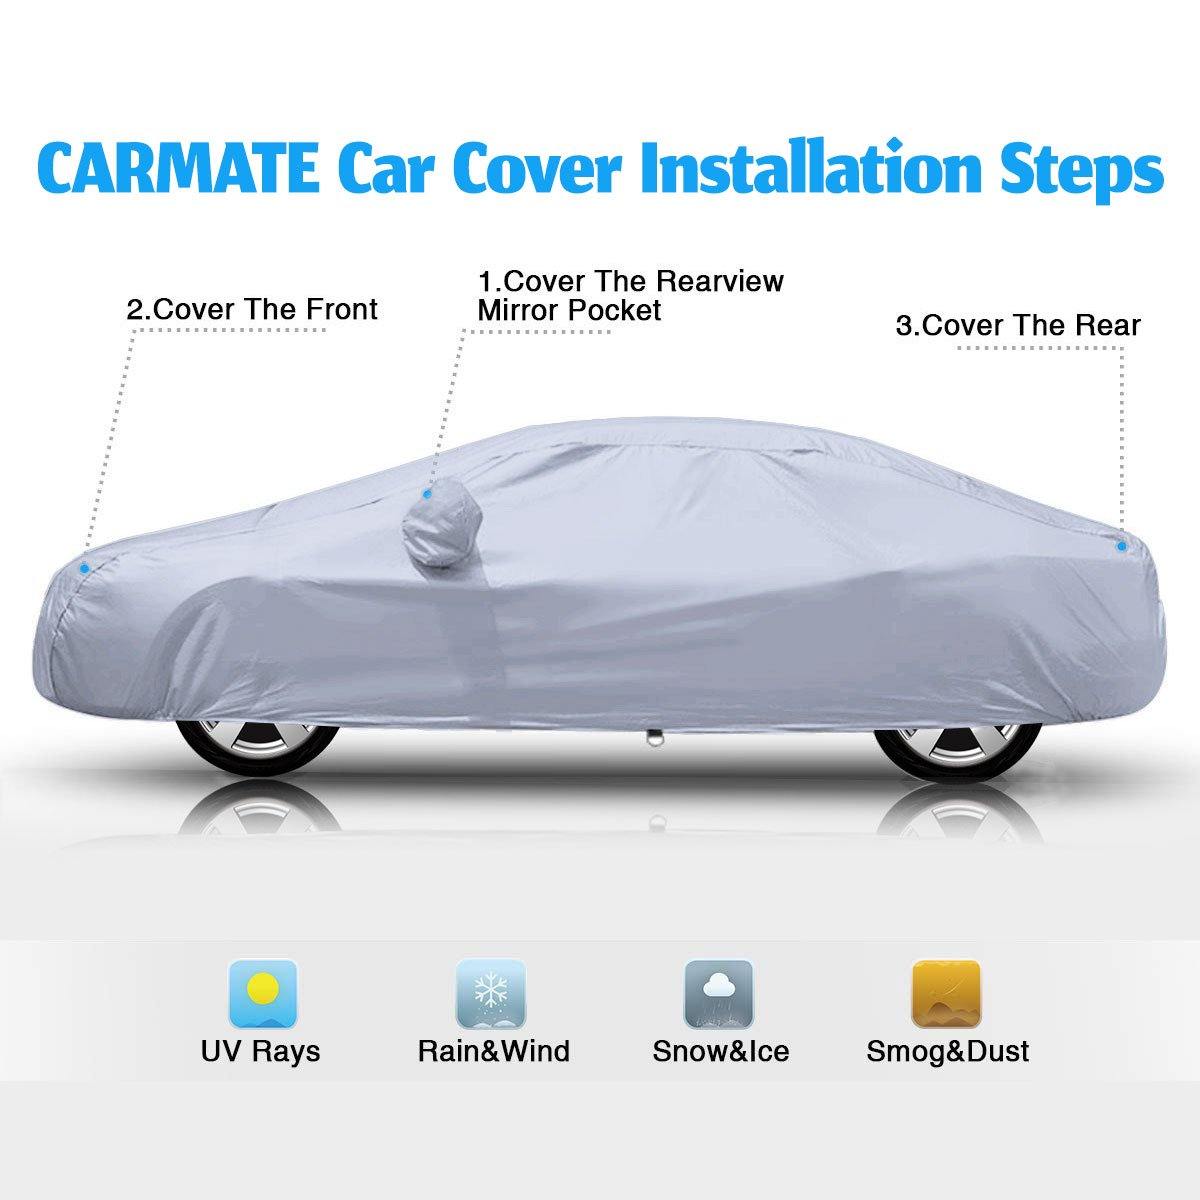 Carmate Premium Car Body Cover Silver Matty (Silver) for  Audi - A7 - CARMATE®